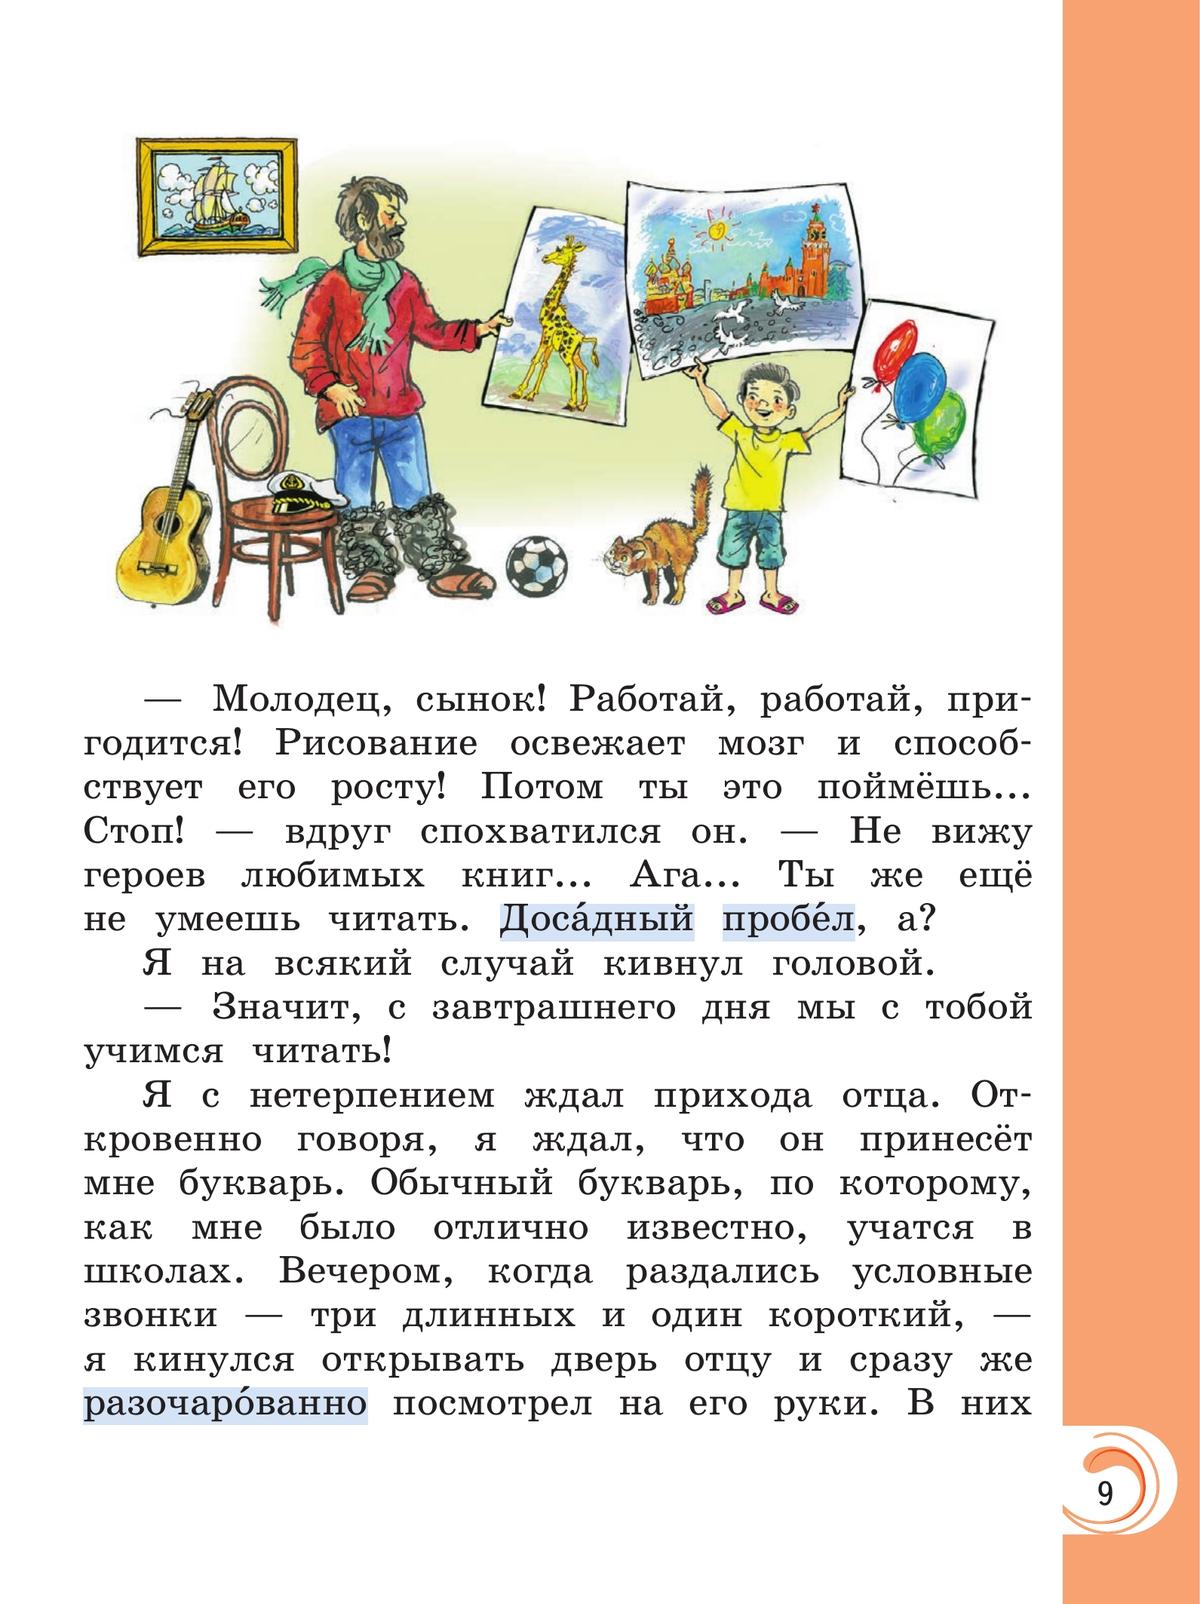 Литературное чтение на родном русском языке. 1 класс. Учебник 9